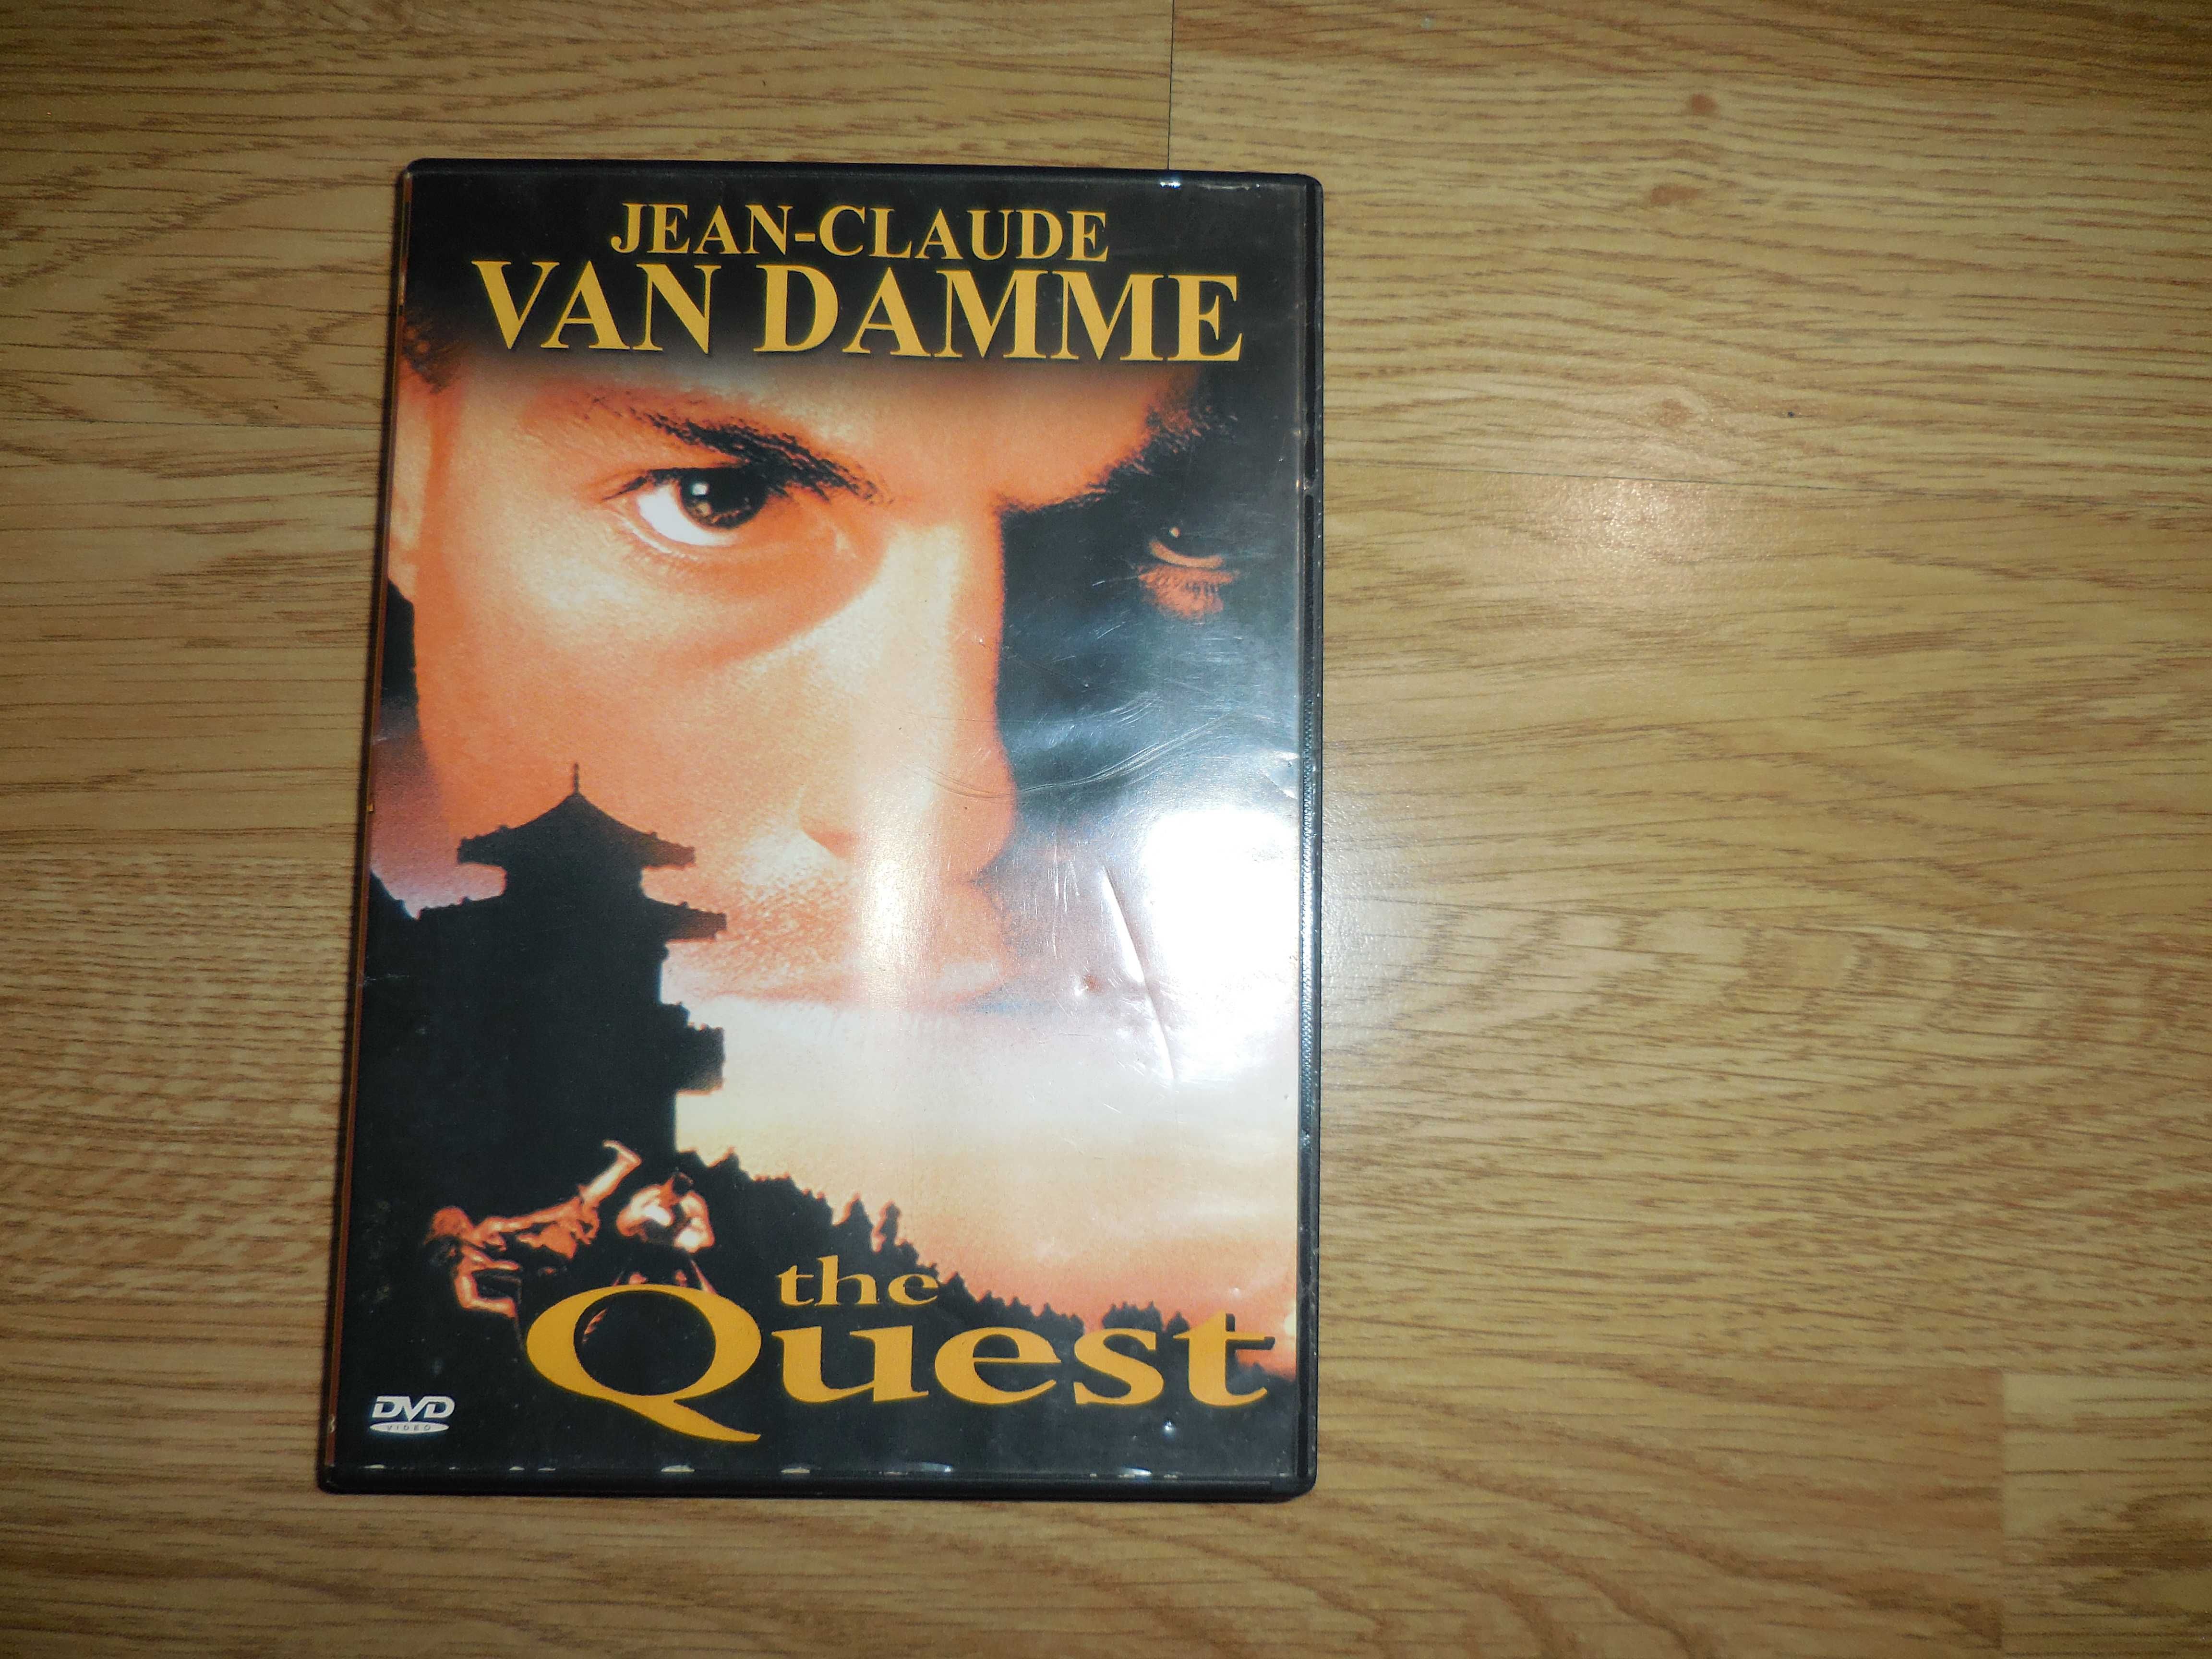 THE QUEST - Jean Claude Van Damme